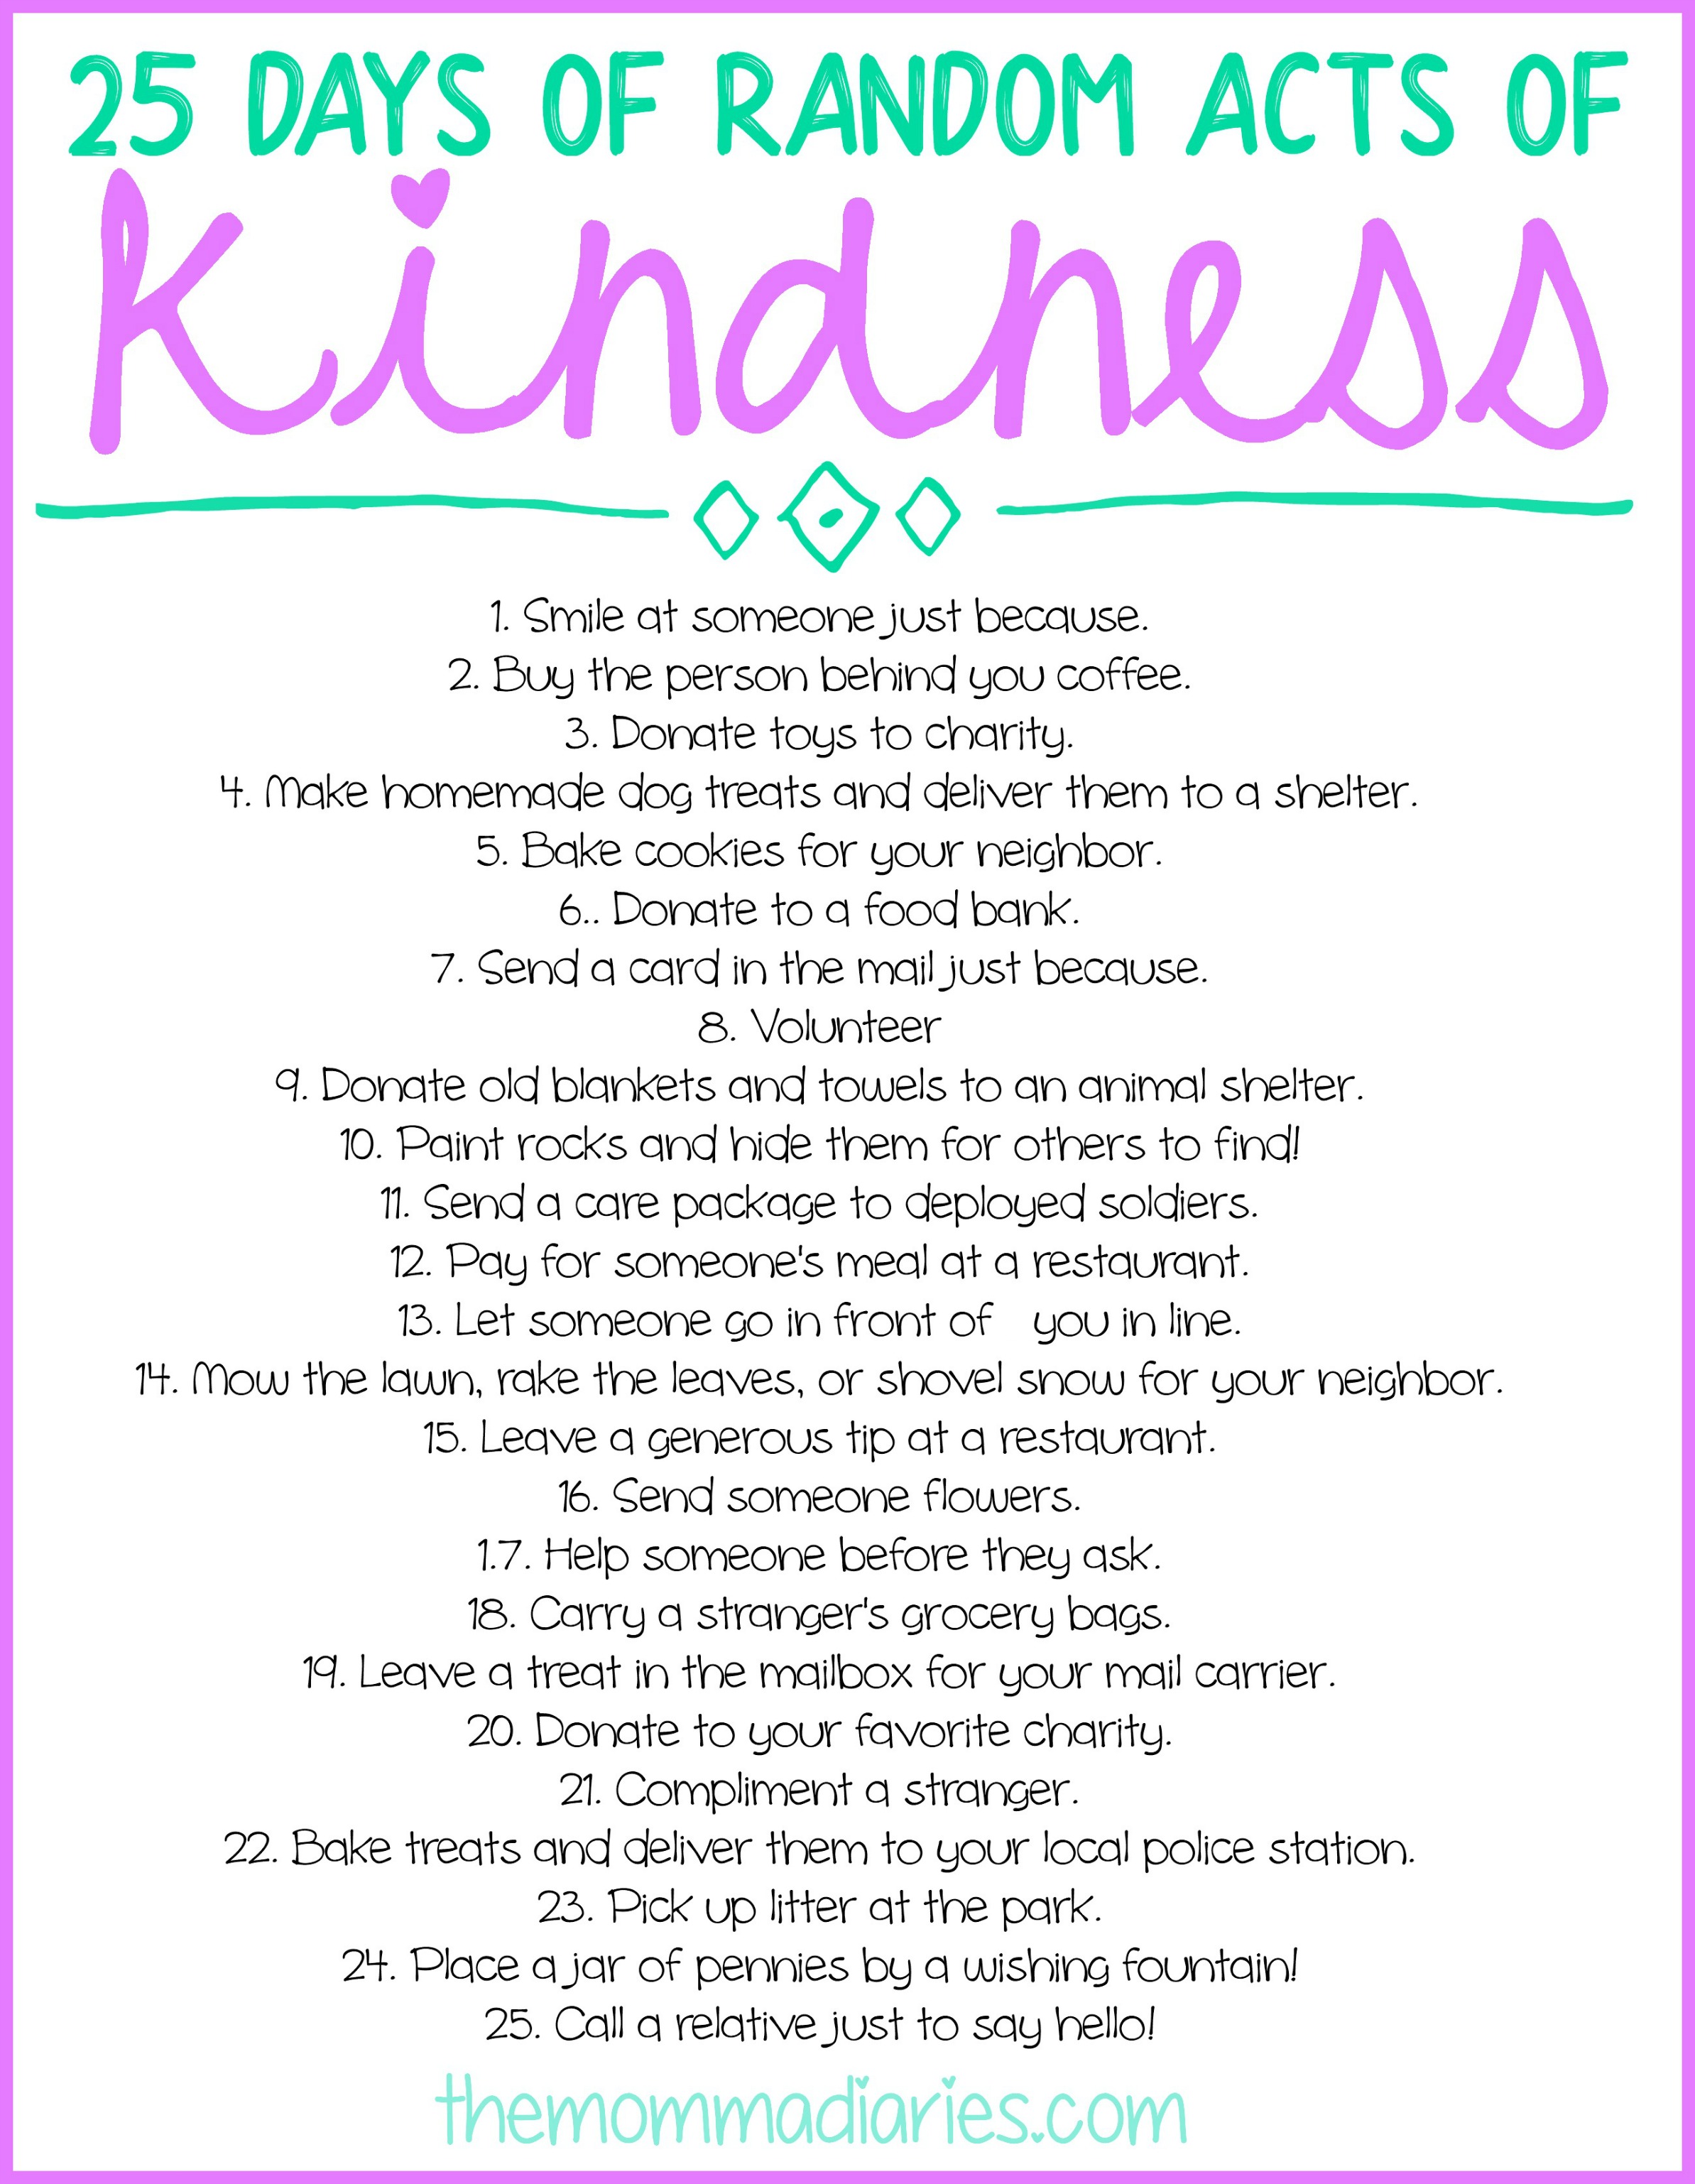 Random Acts of Kindness, Random Acts of Kindness Ideas, Random Acts of Kindness for Kids